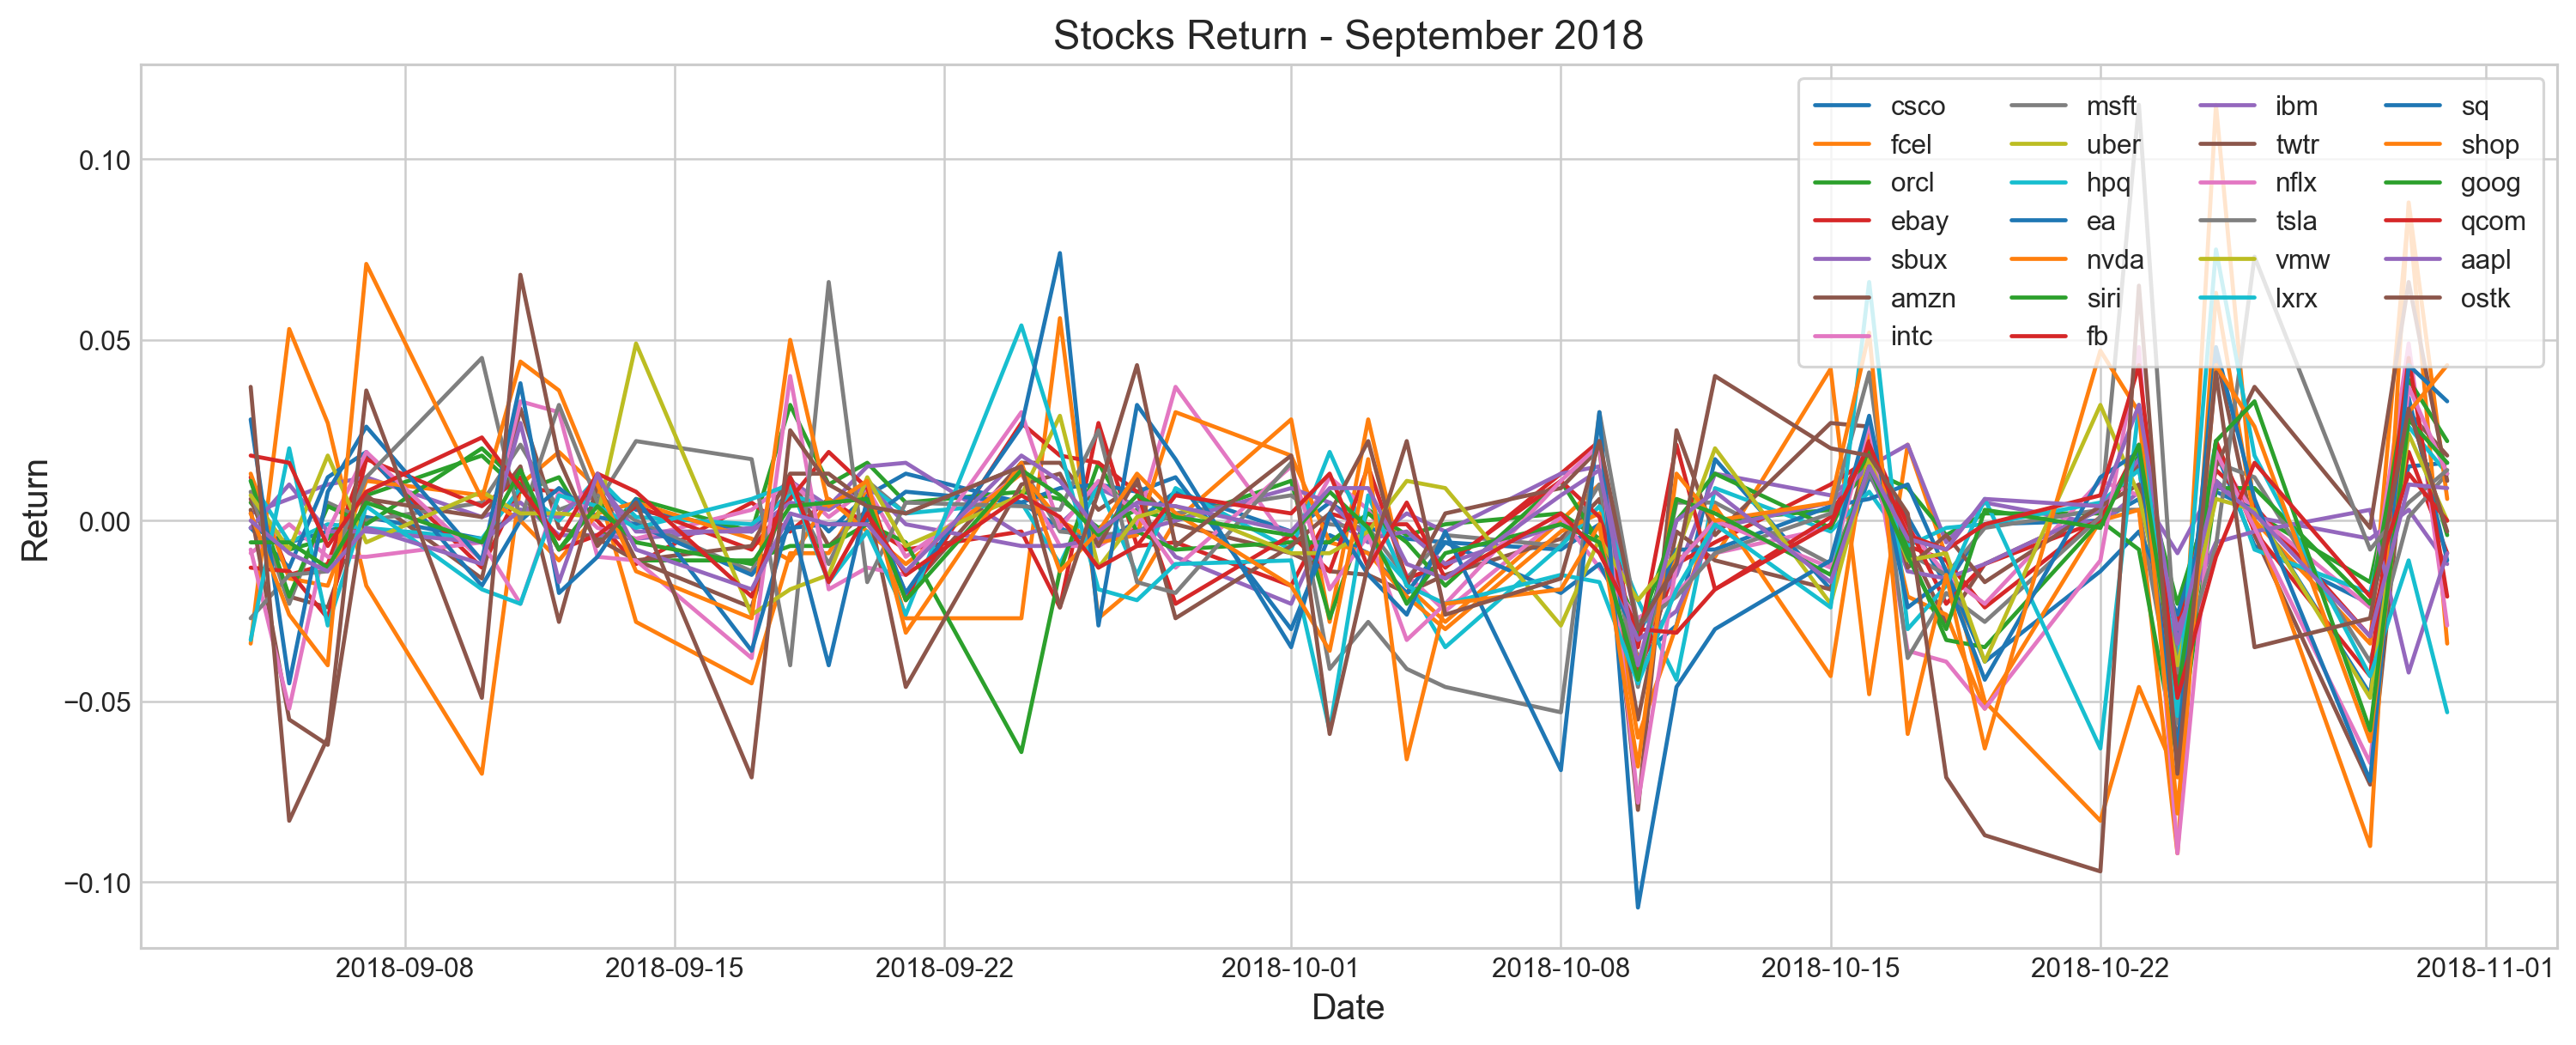 Stocks Return